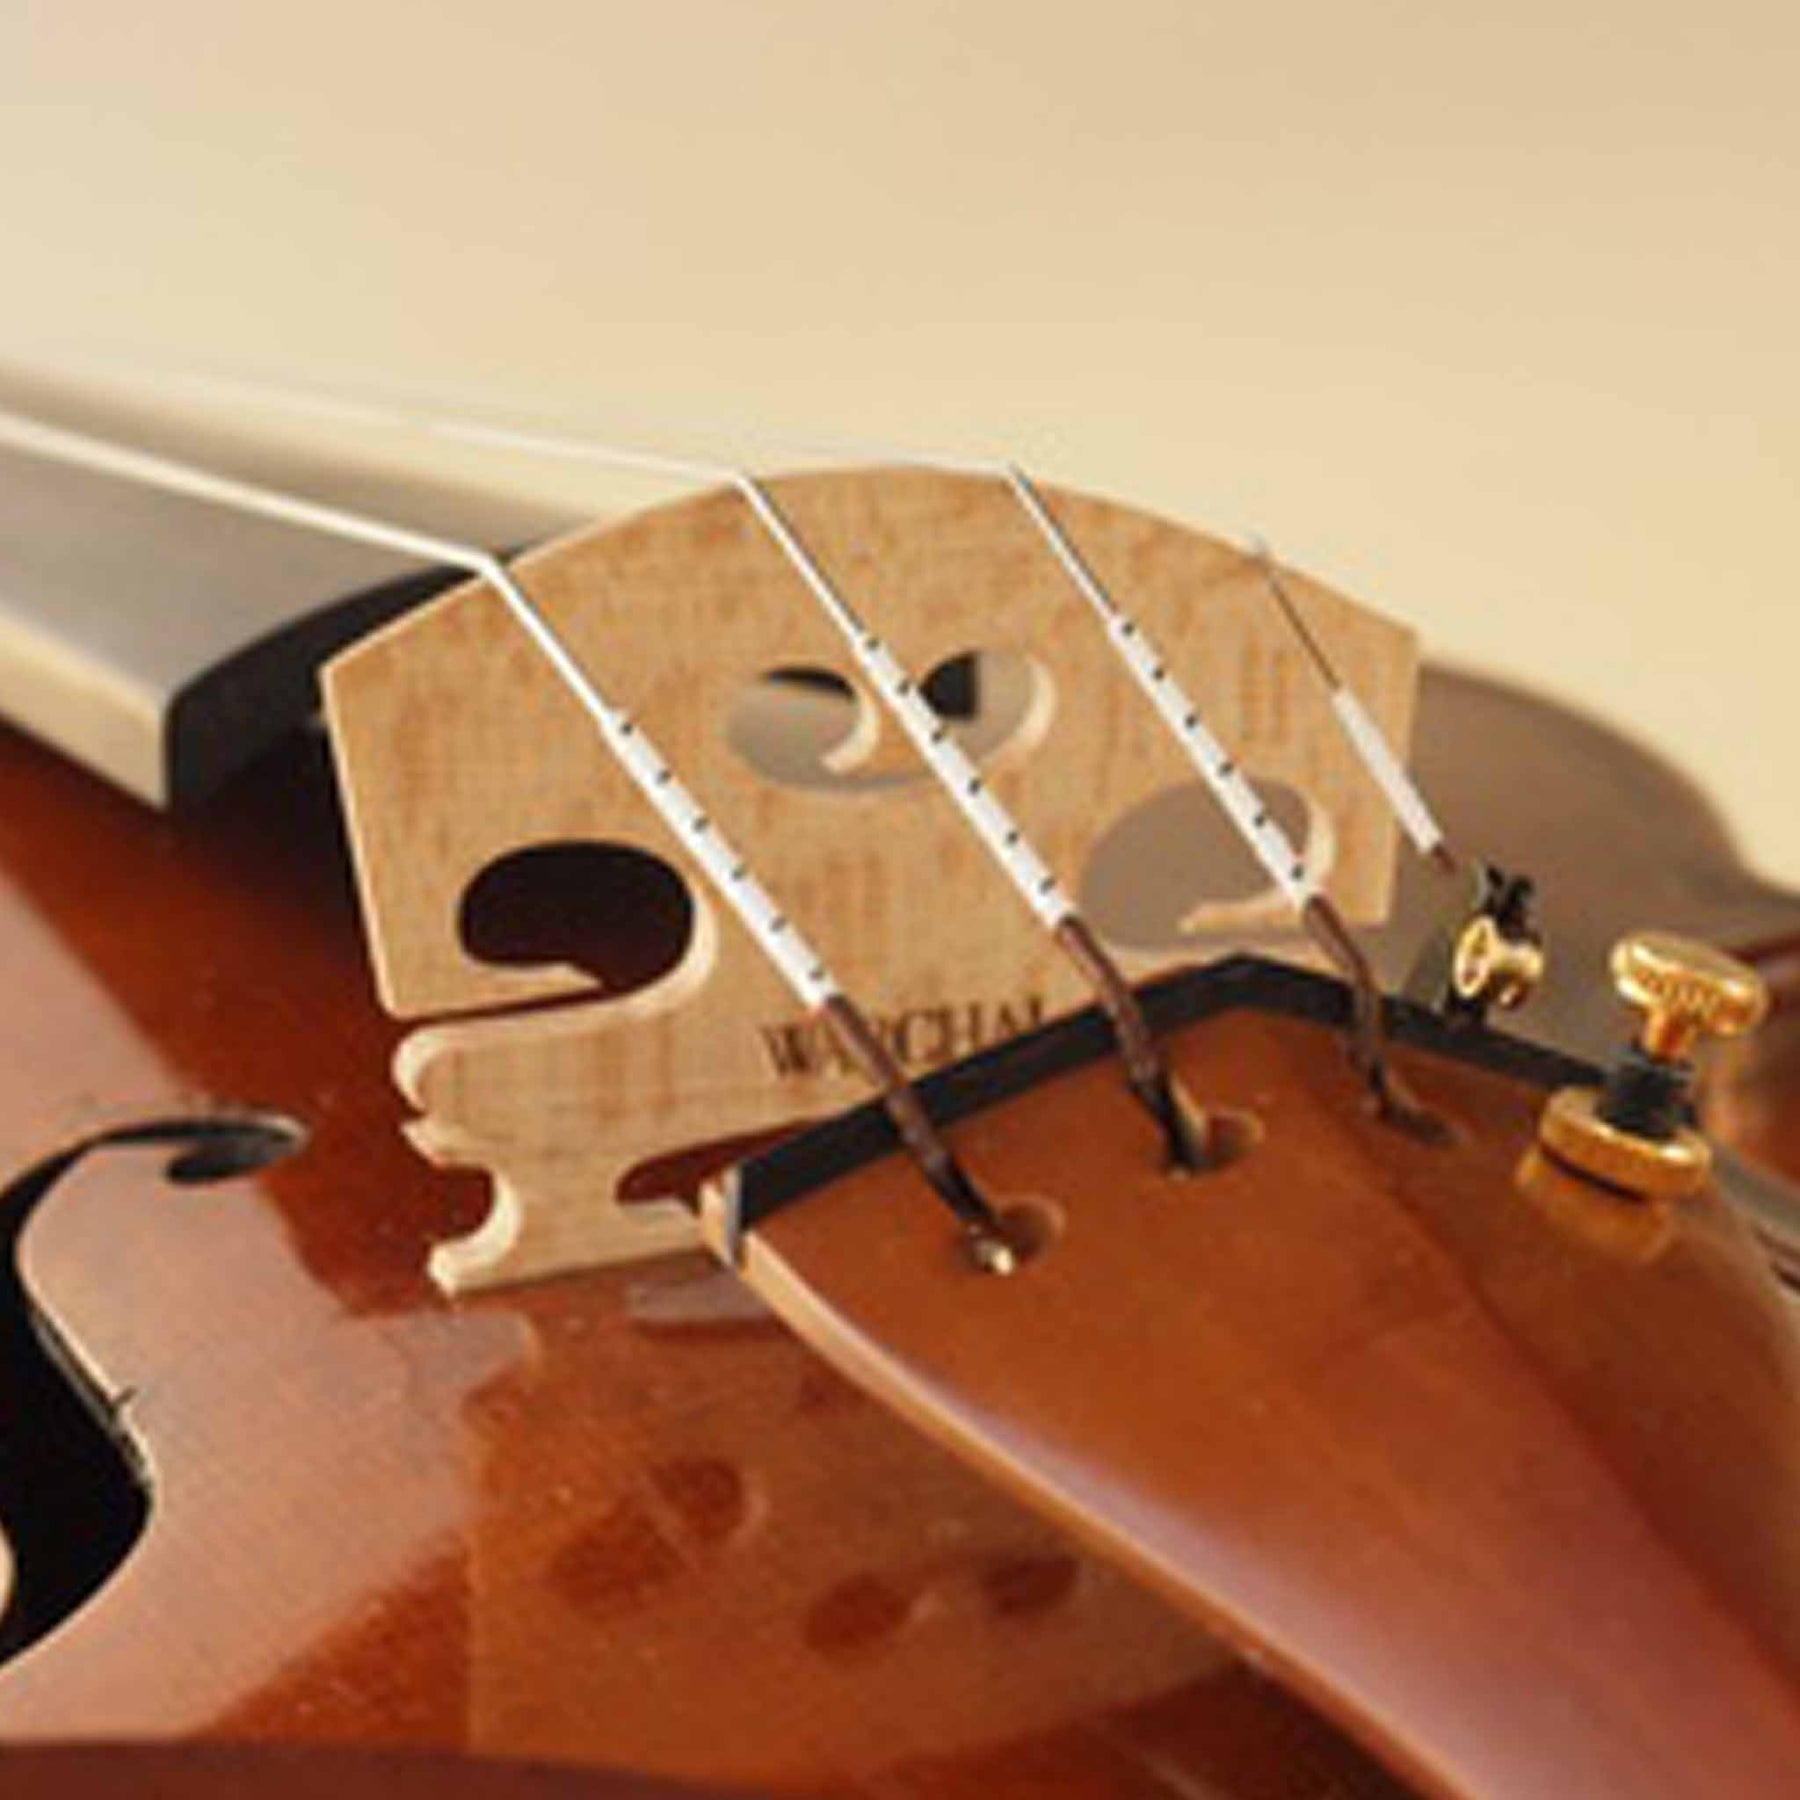 Warchal Amber Violin String Set